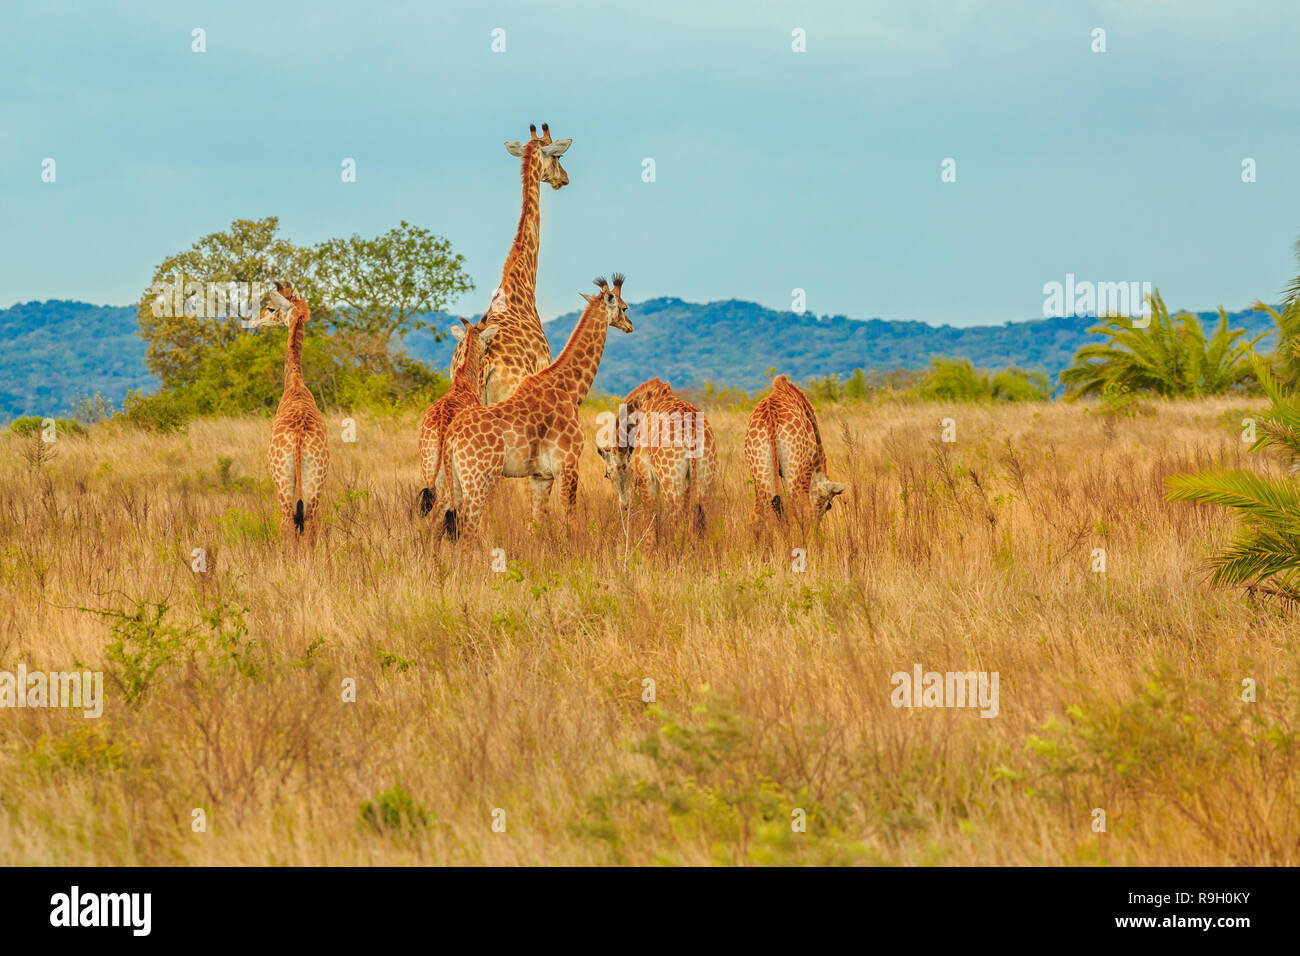 Gruppe der Afrikanischen giraffe Spaziergänge in iSimangaliso Wetland Park mit Savannenlandschaft. Südafrika game drive Safari. Kopieren Sie Platz. Stockfoto